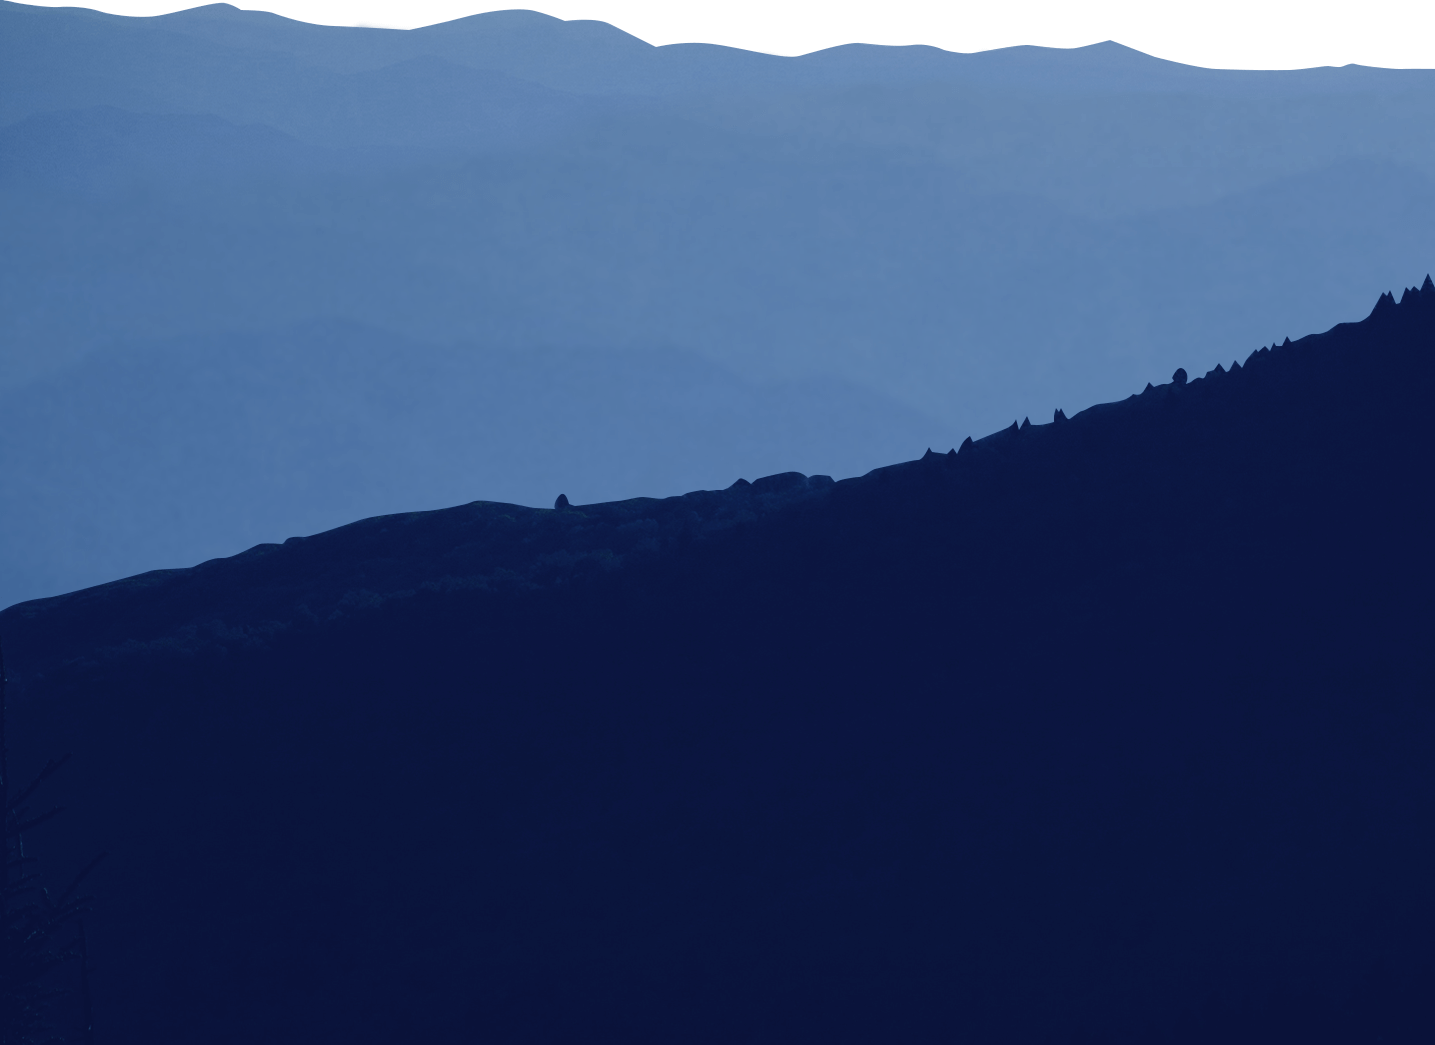 Mountain outline